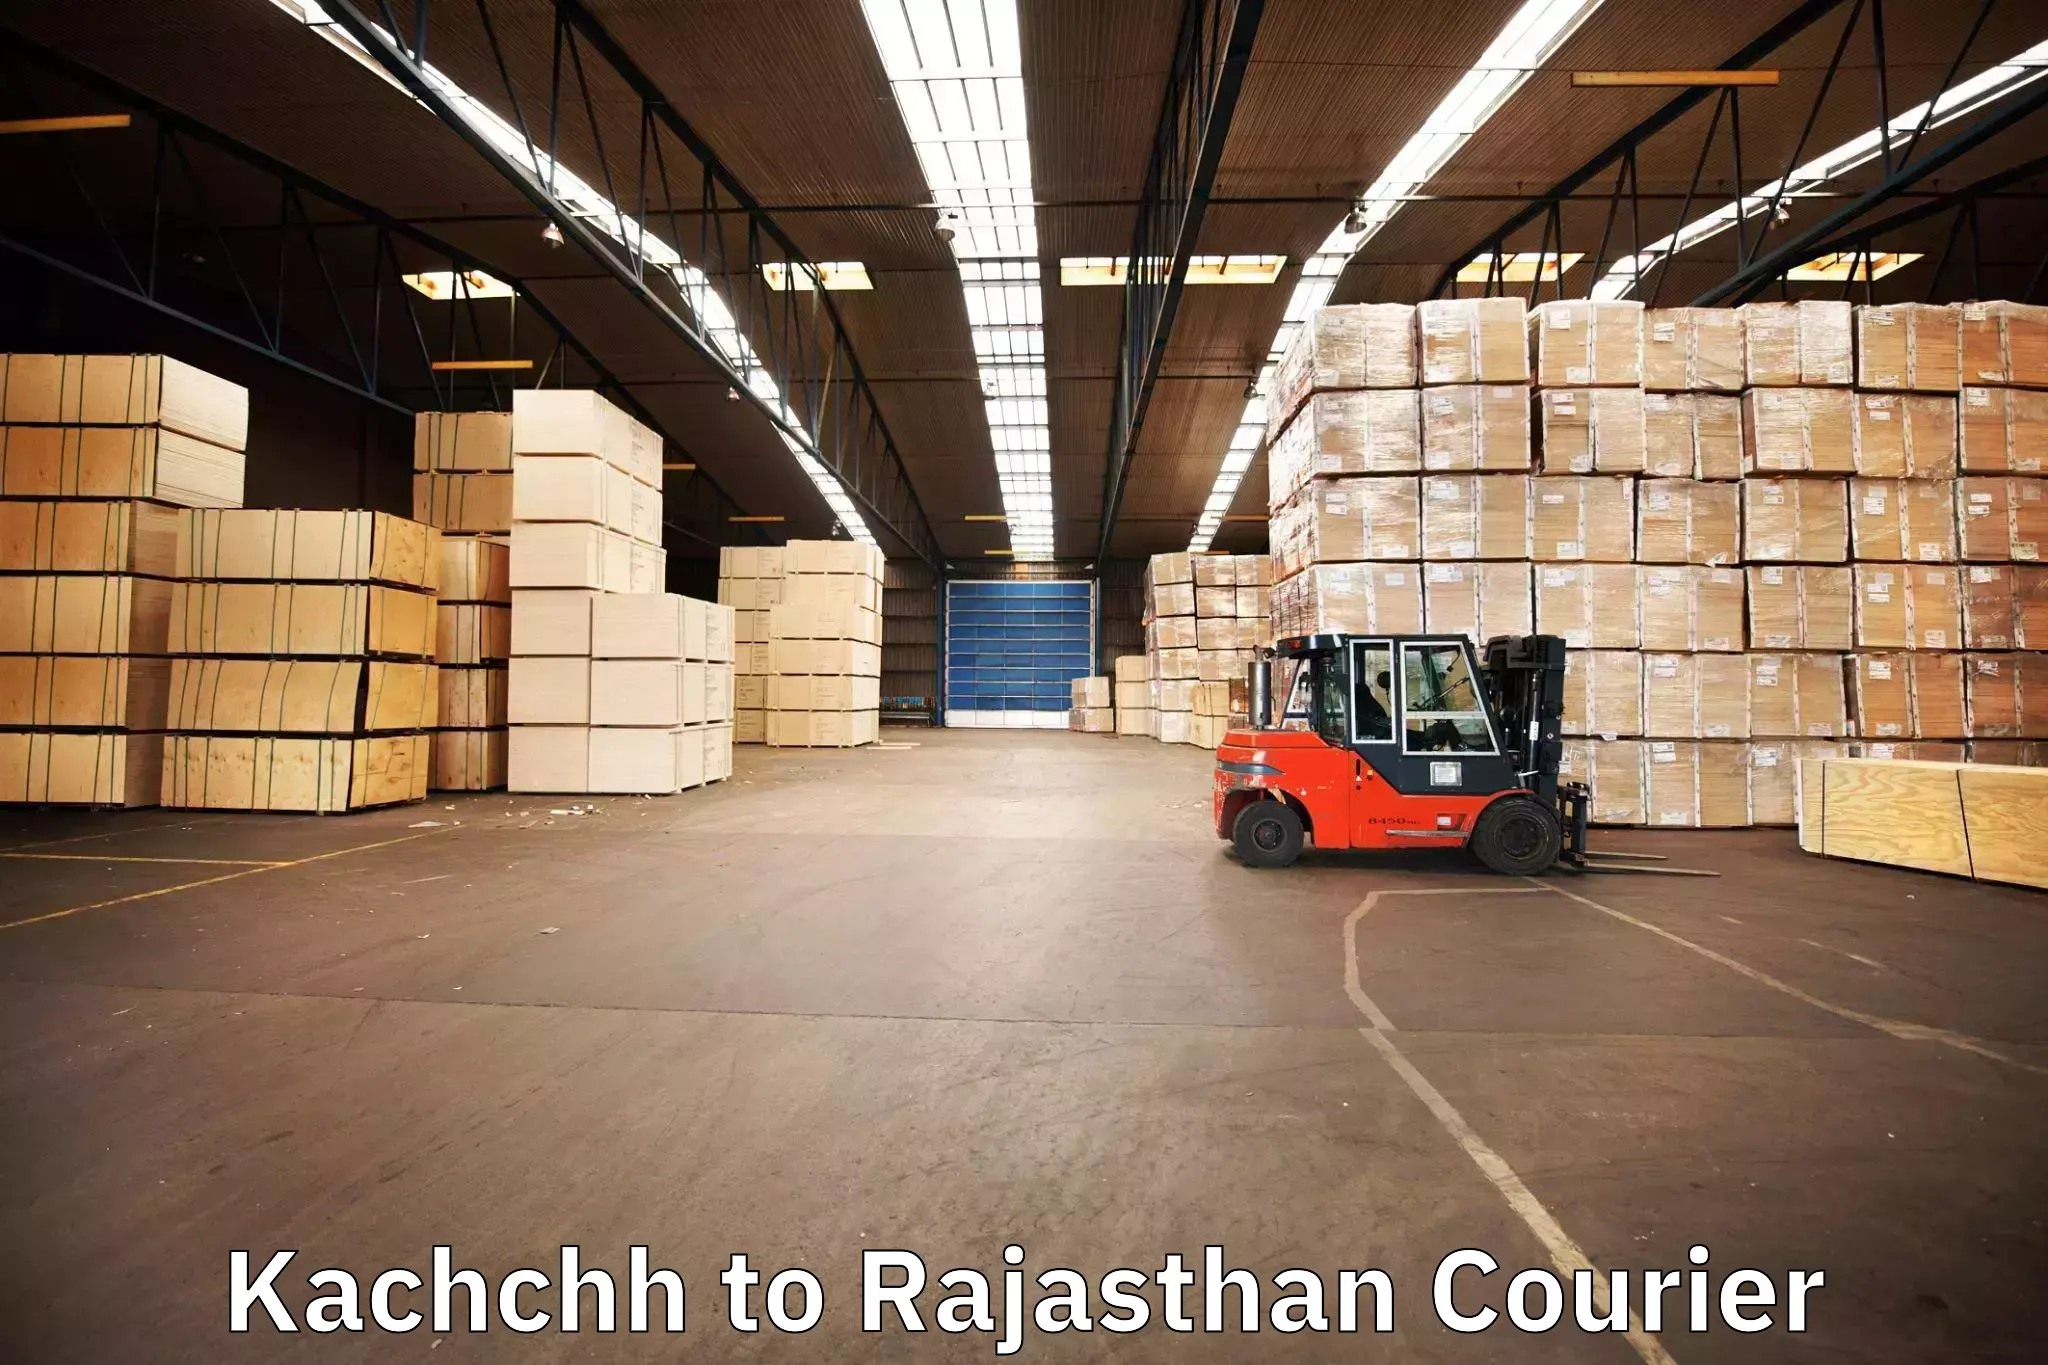 Professional moving company Kachchh to Makrana